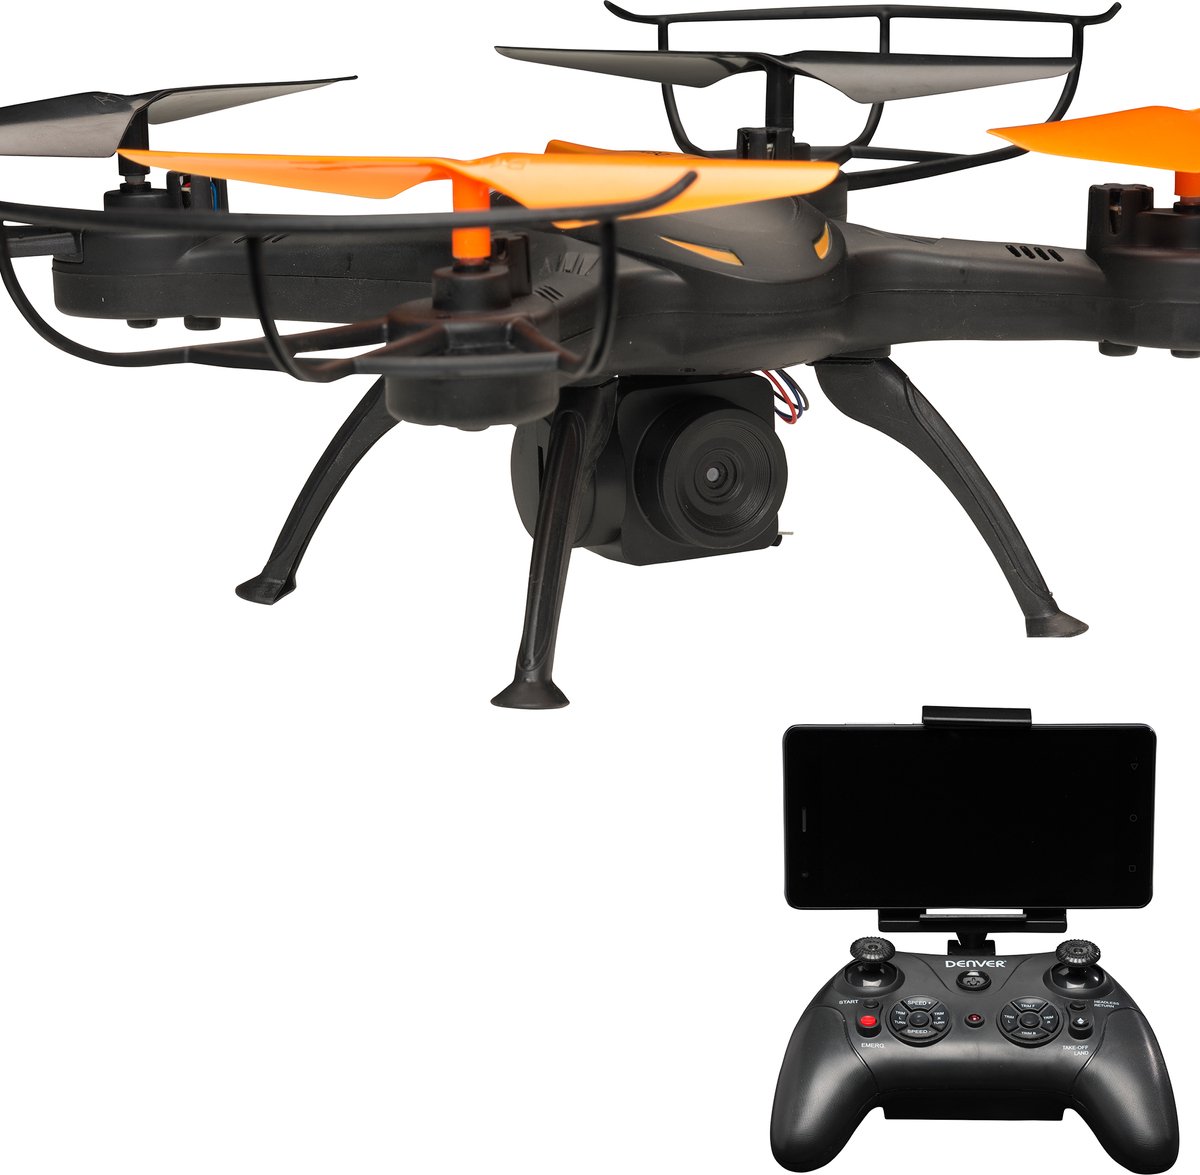 Denver Drone met Camera - Voor Android & iOS - WiFi Drone voor Volwassenen en Kinderen - Foto's, video's en live meekijken via app - LED lampjes - Mini Drone - DCW380